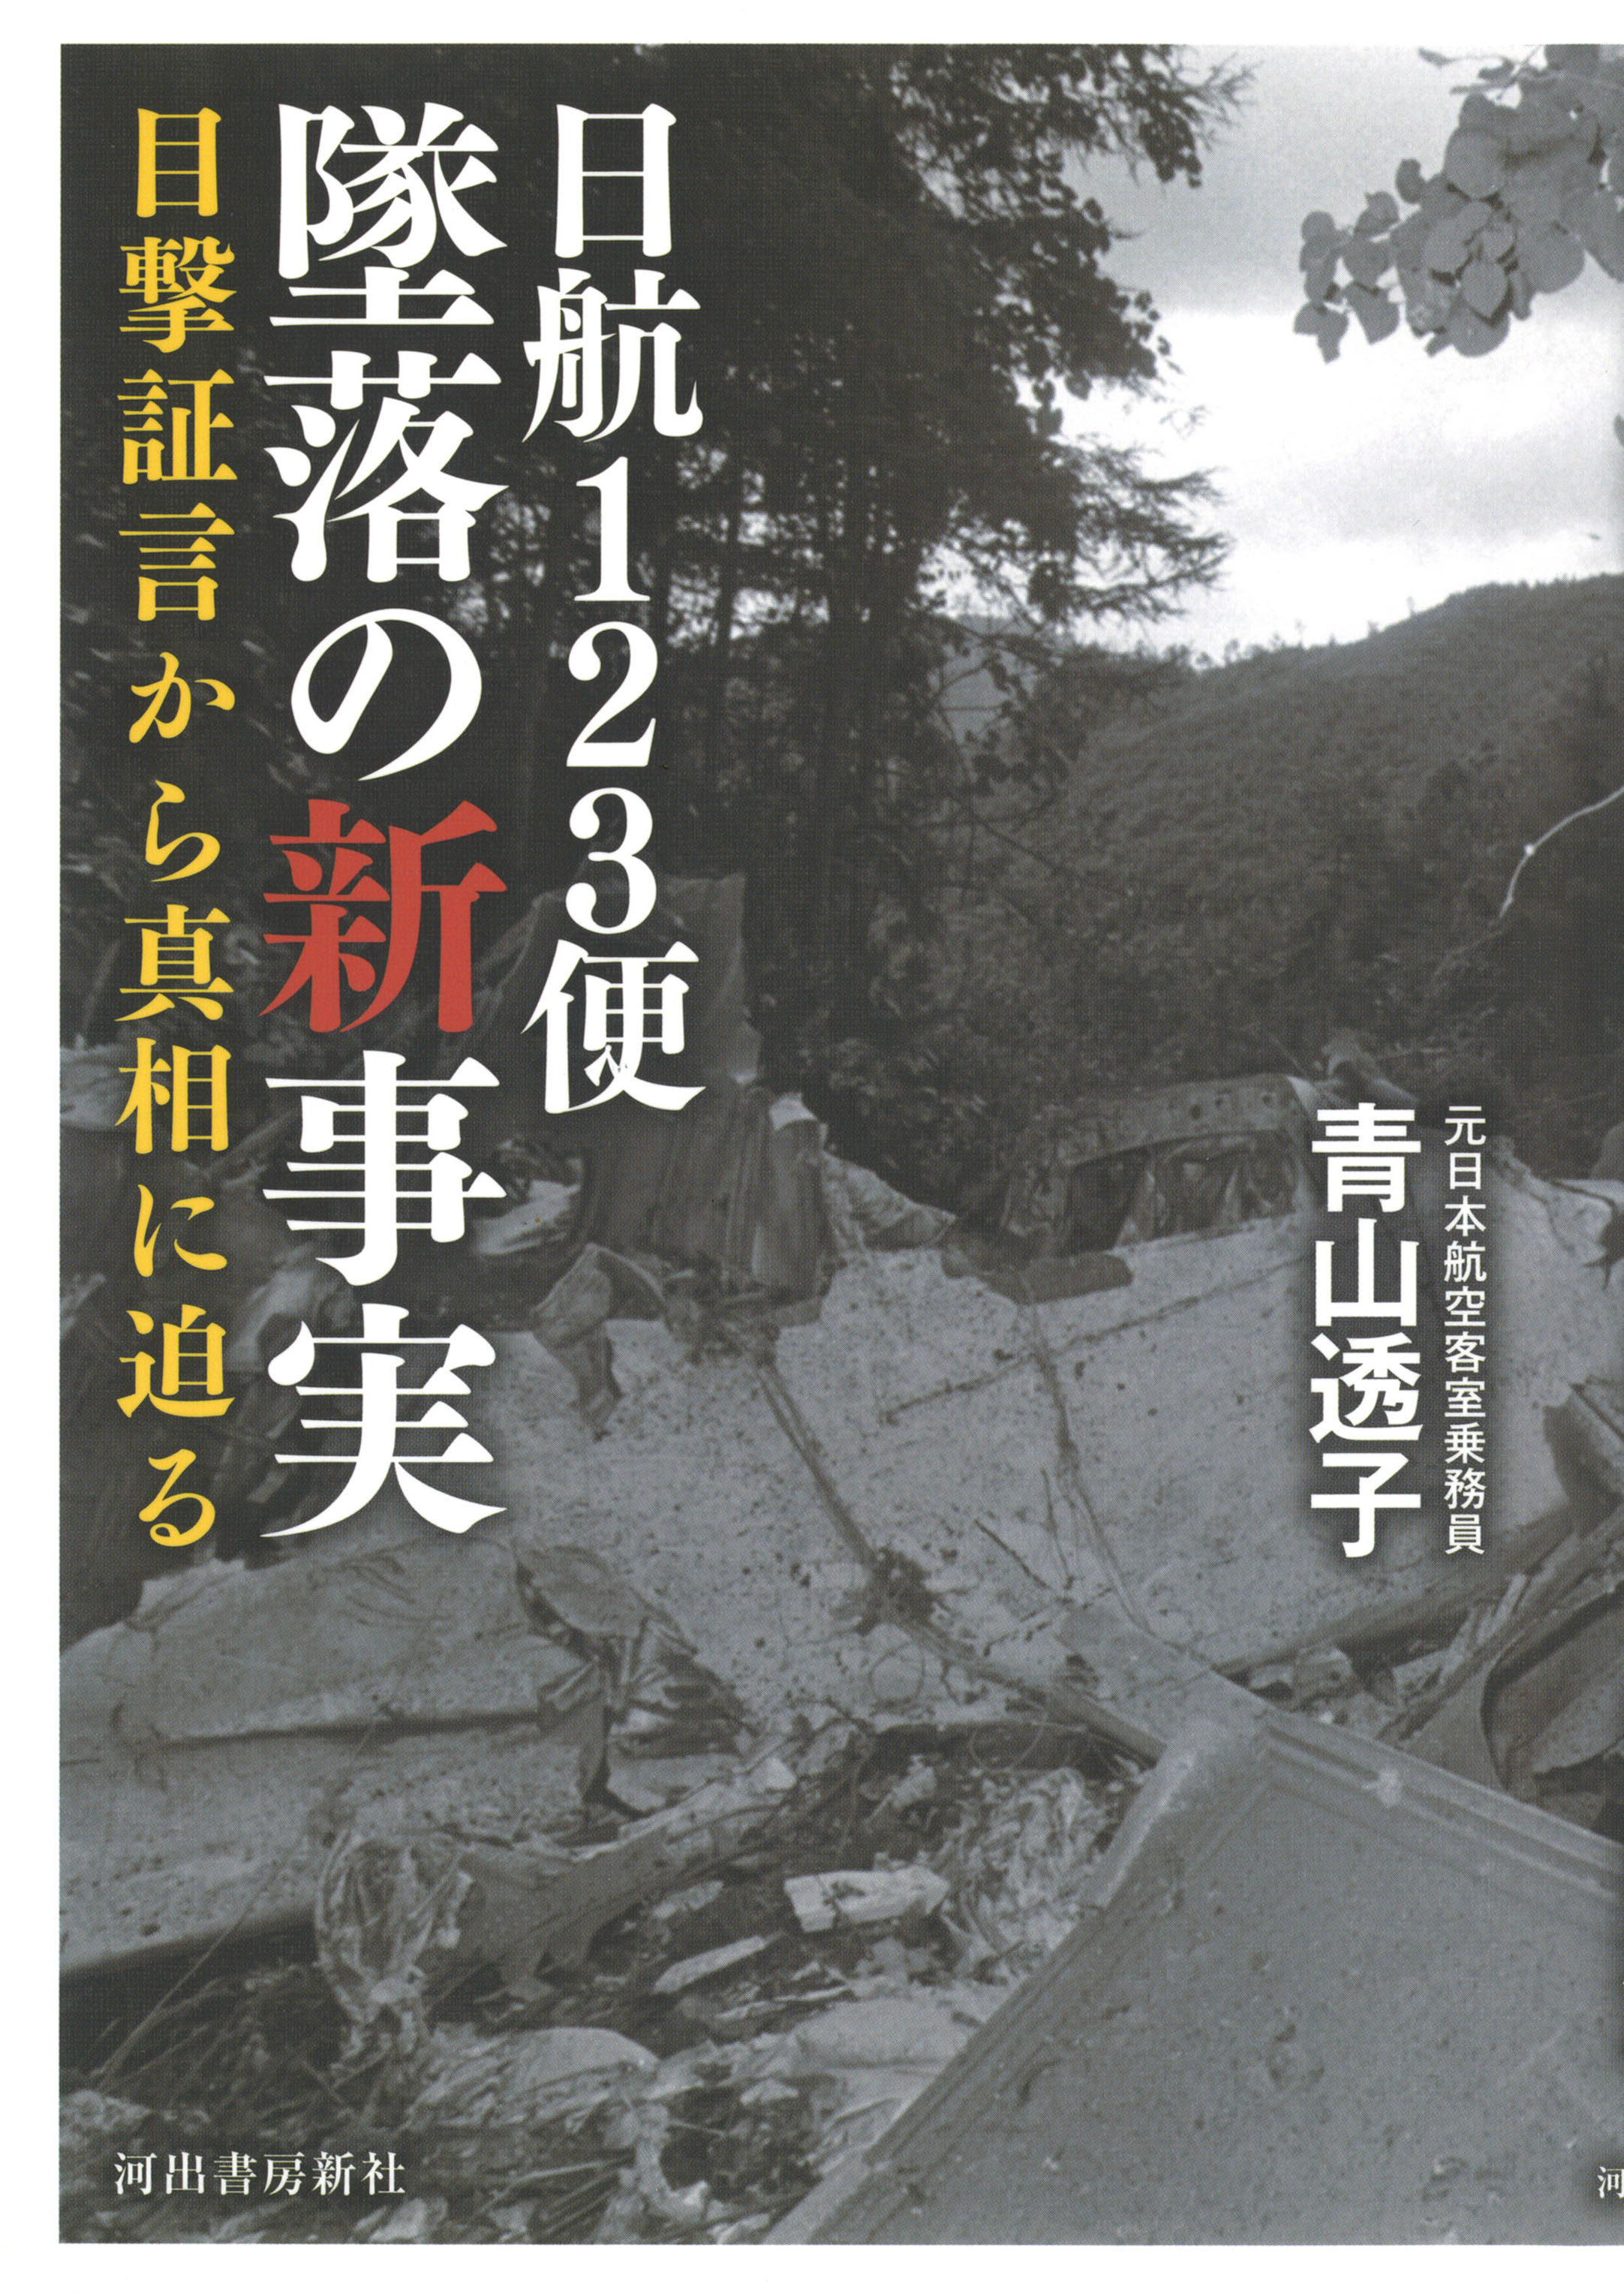 日本 航空 123 便 墜落 事故